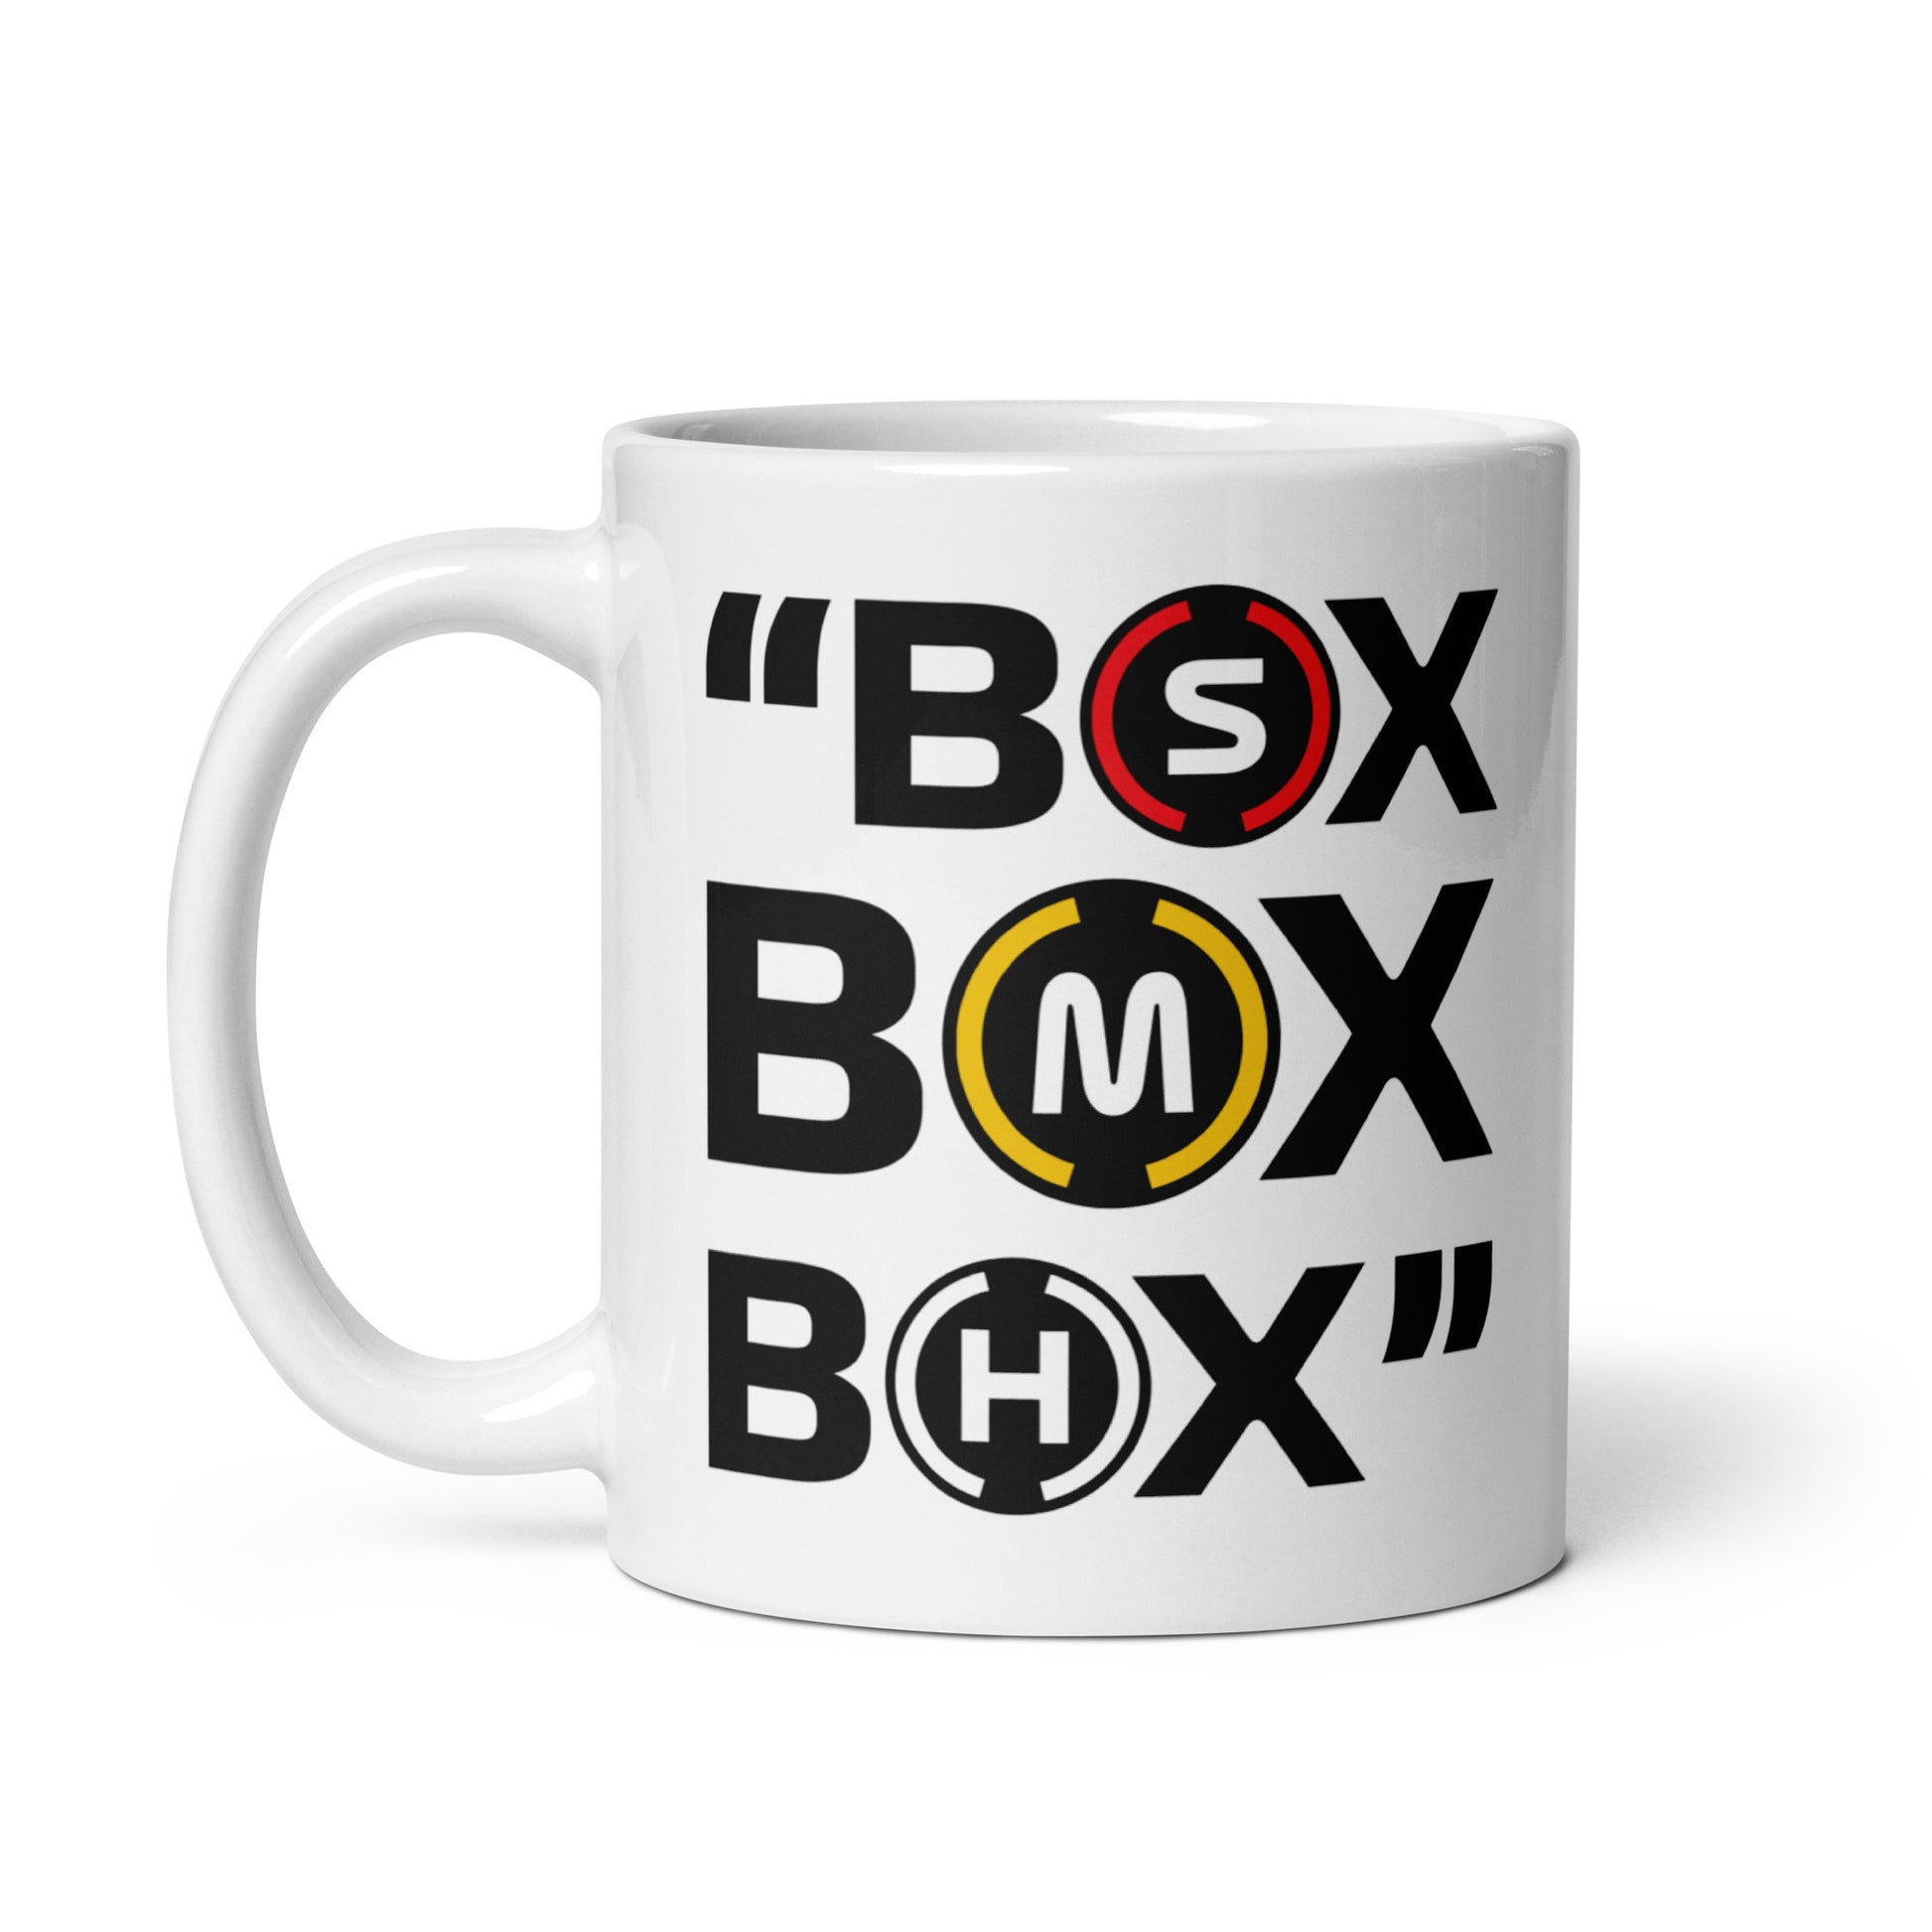 Box Box Box Mug left view